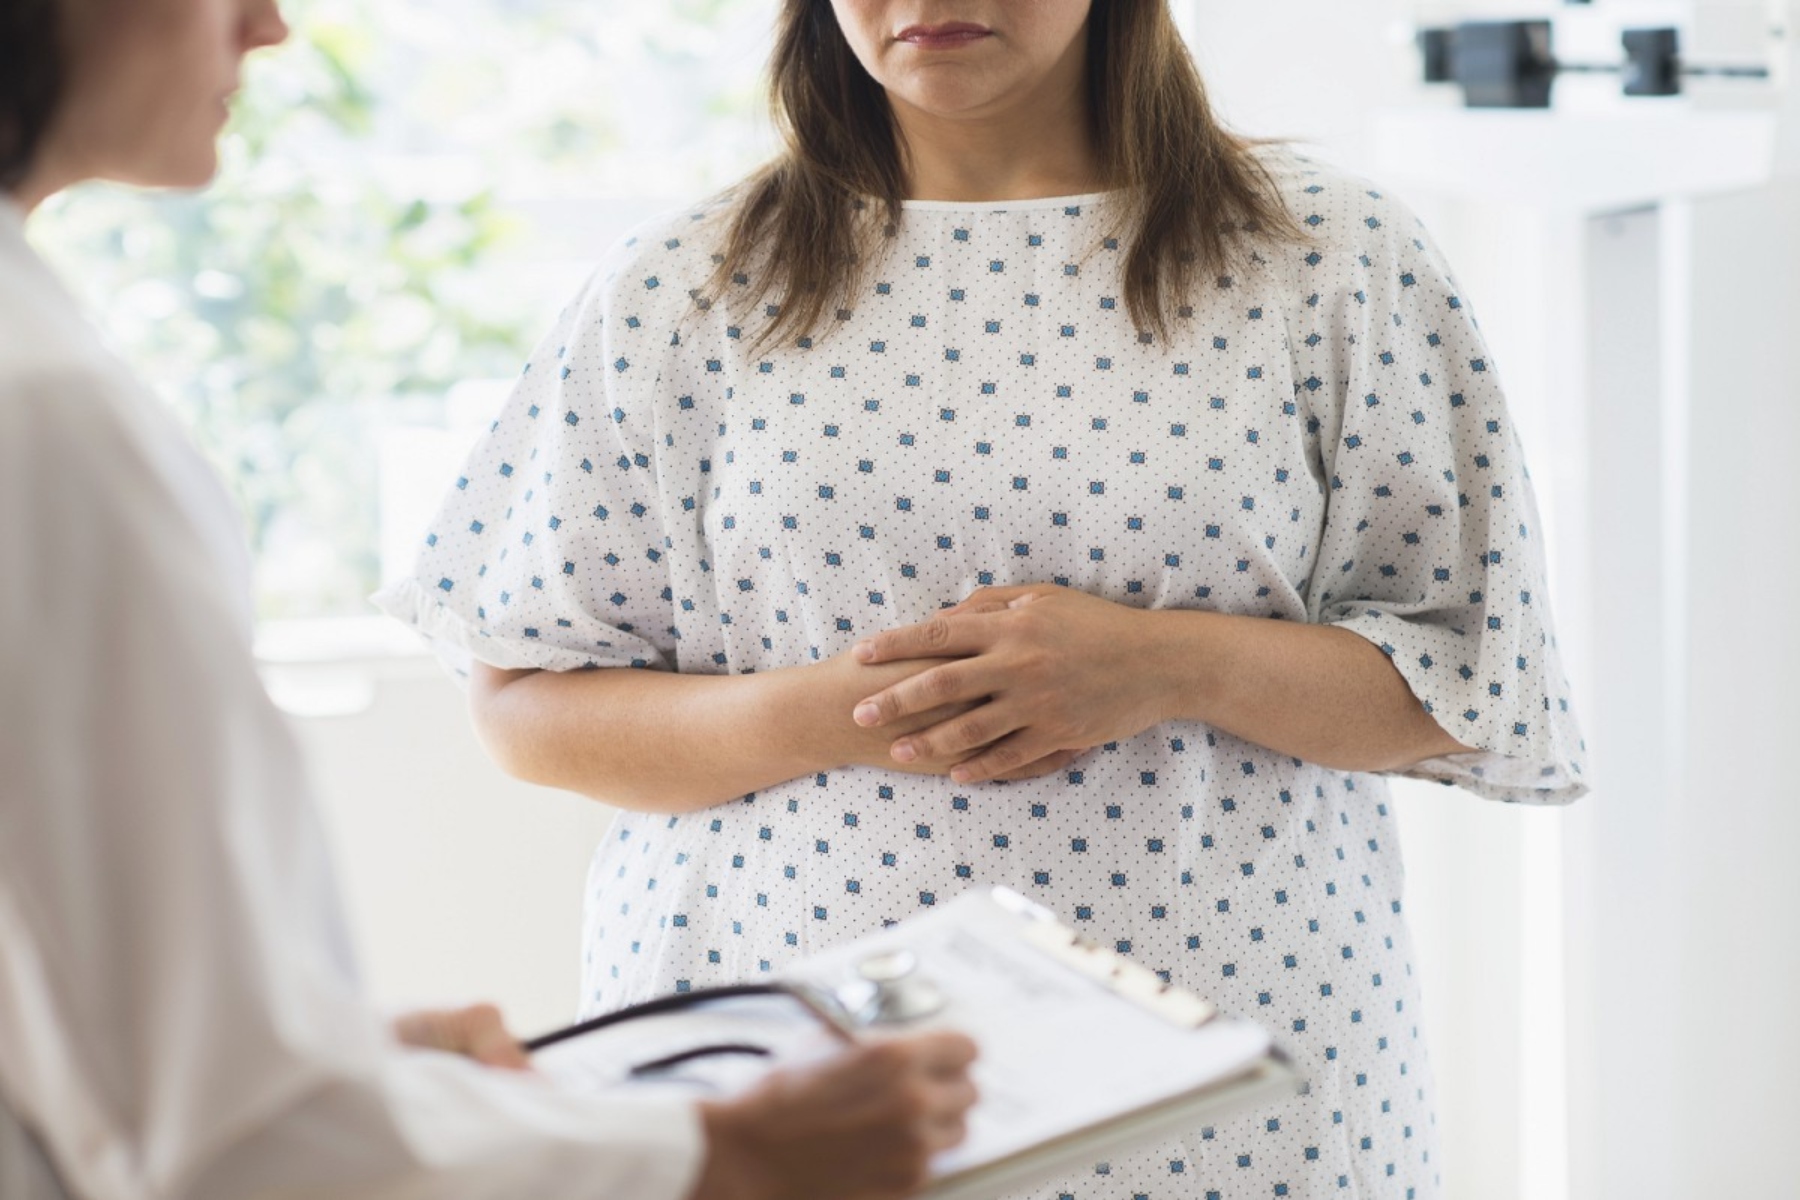 Παχυσαρκία: Οι γιατροί επιδιώκουν να τερματίσουν την προκατάληψη έναντι των υπέρβαρων ασθενών